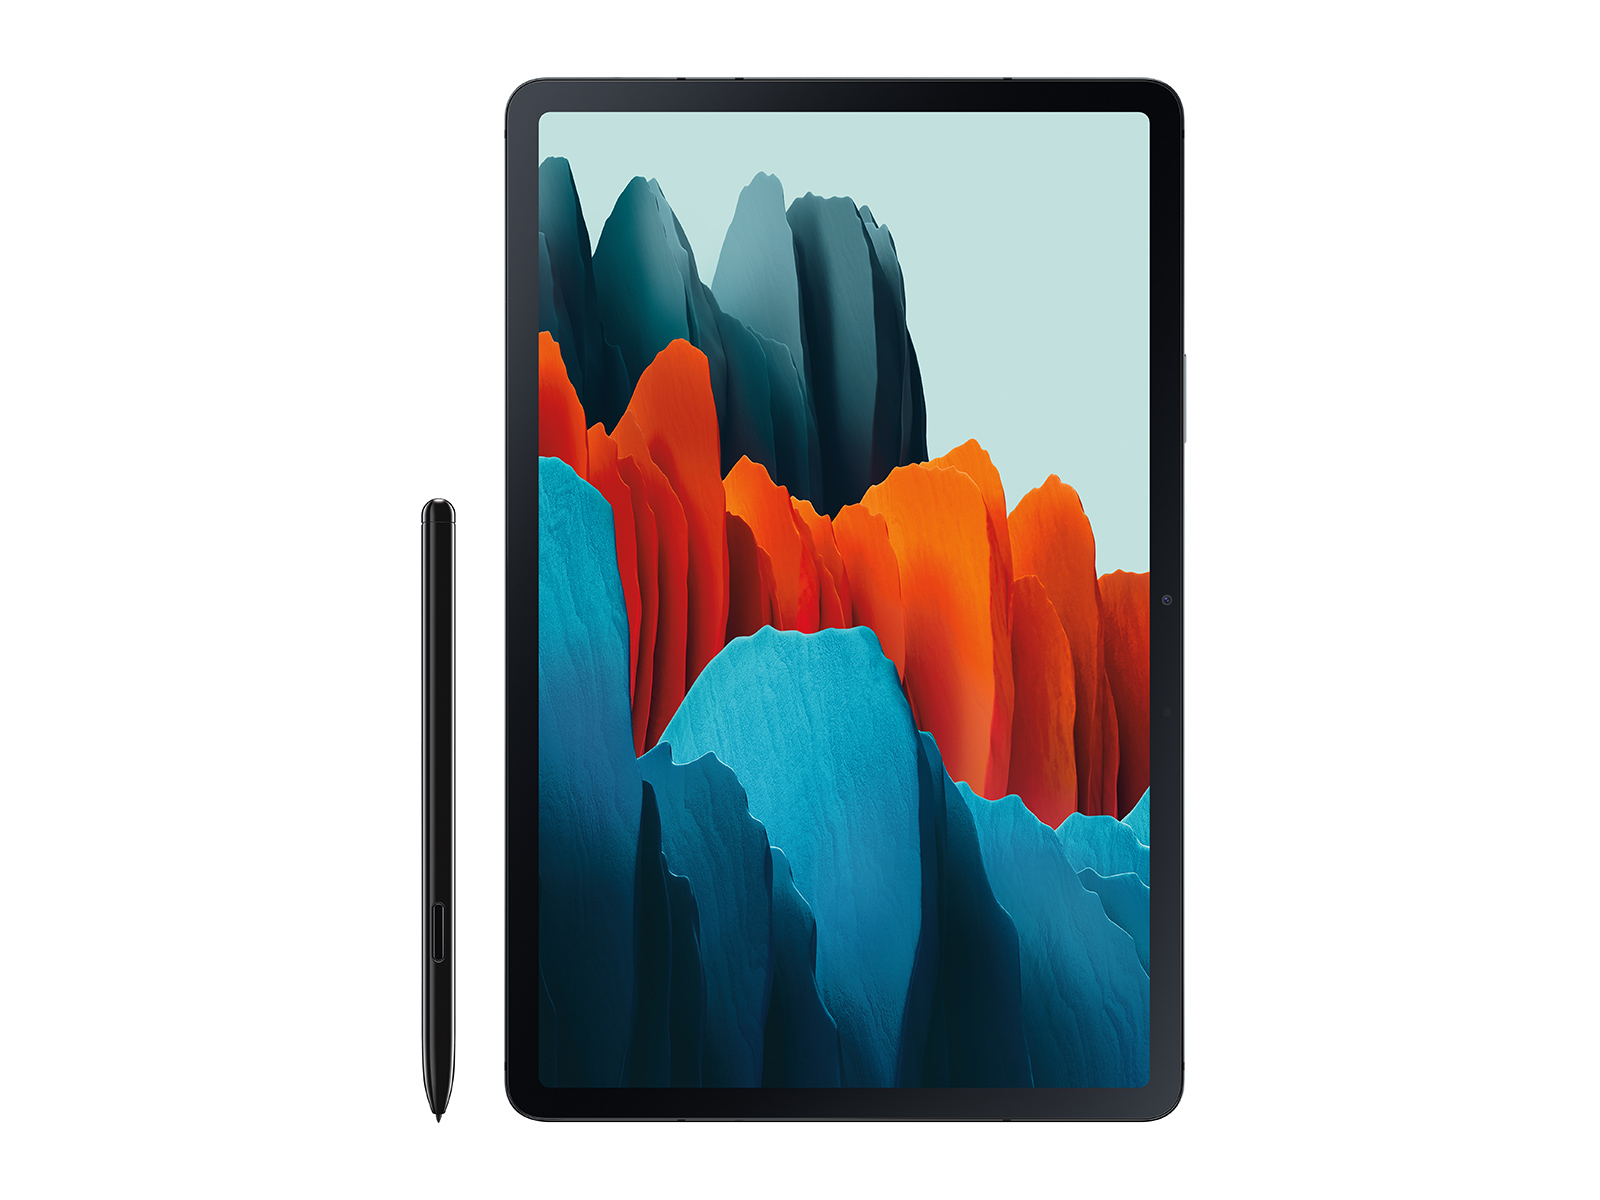 Galaxy Tab S7+, 128GB, Mystic Black Tablets - SM-T970NZKAXAR 